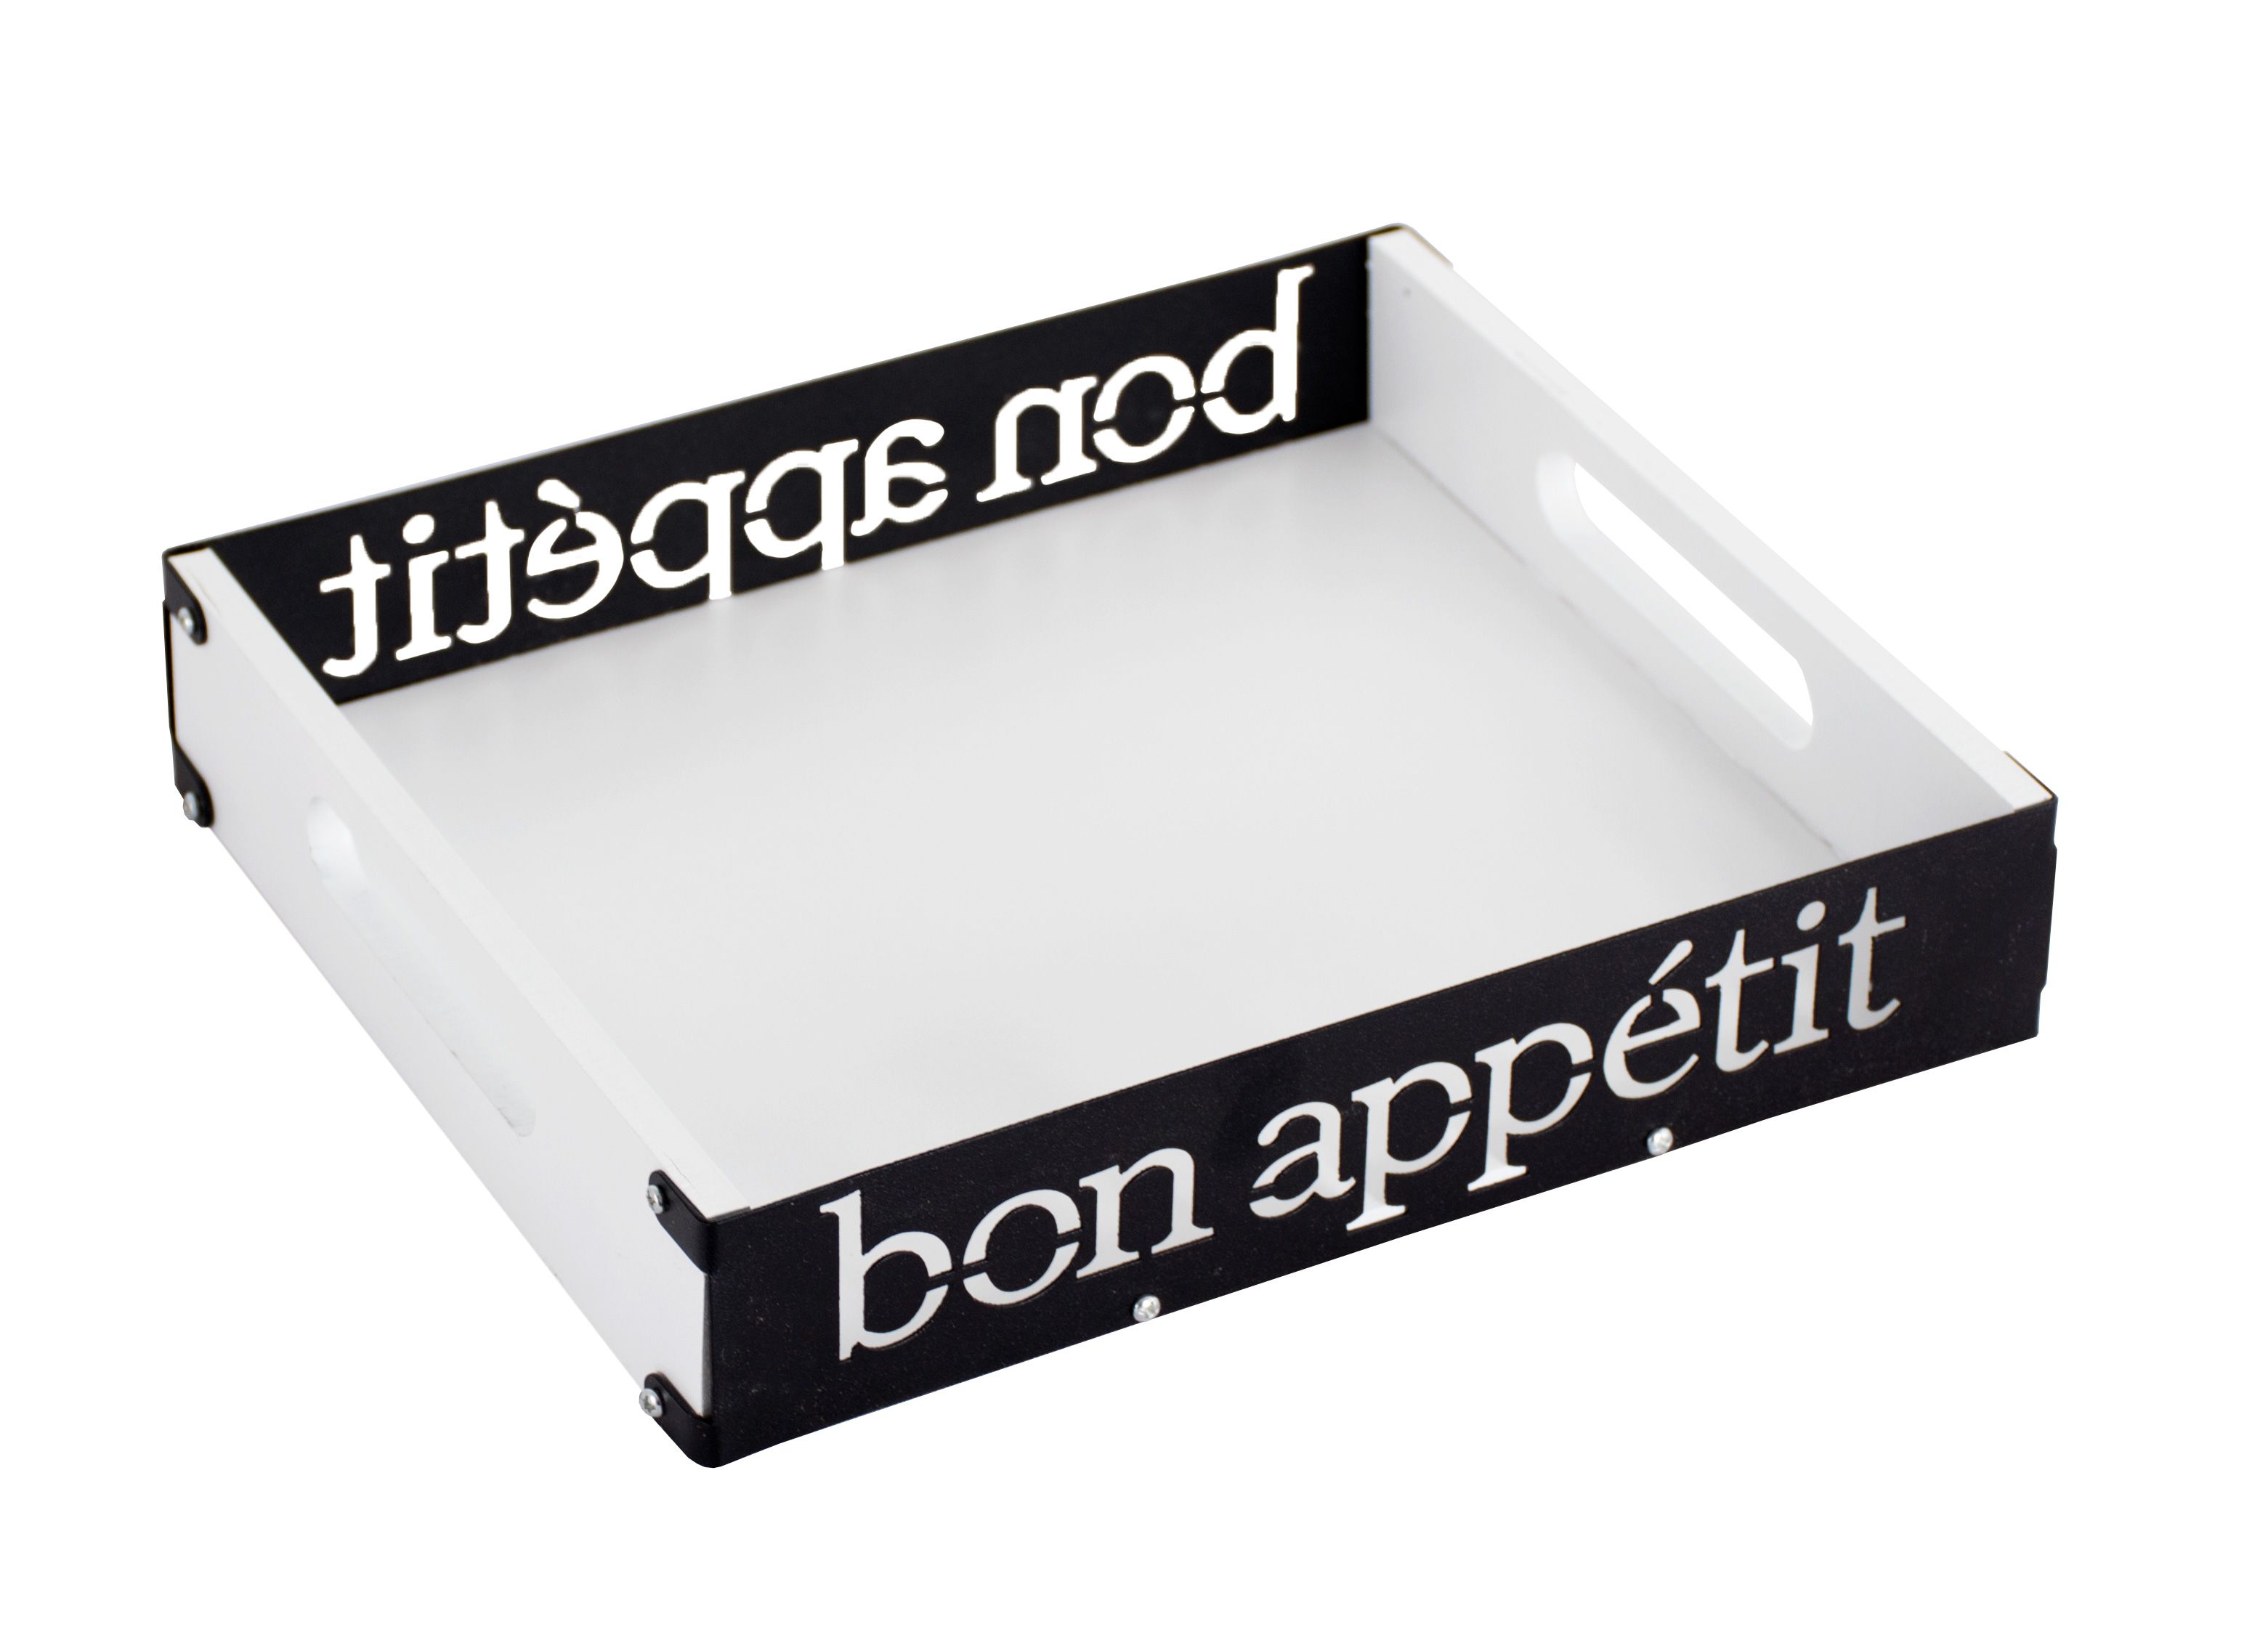 Поднос "Bon appetit" 27x20x5 см, белый/черный, мдф/металл, KD-027-130